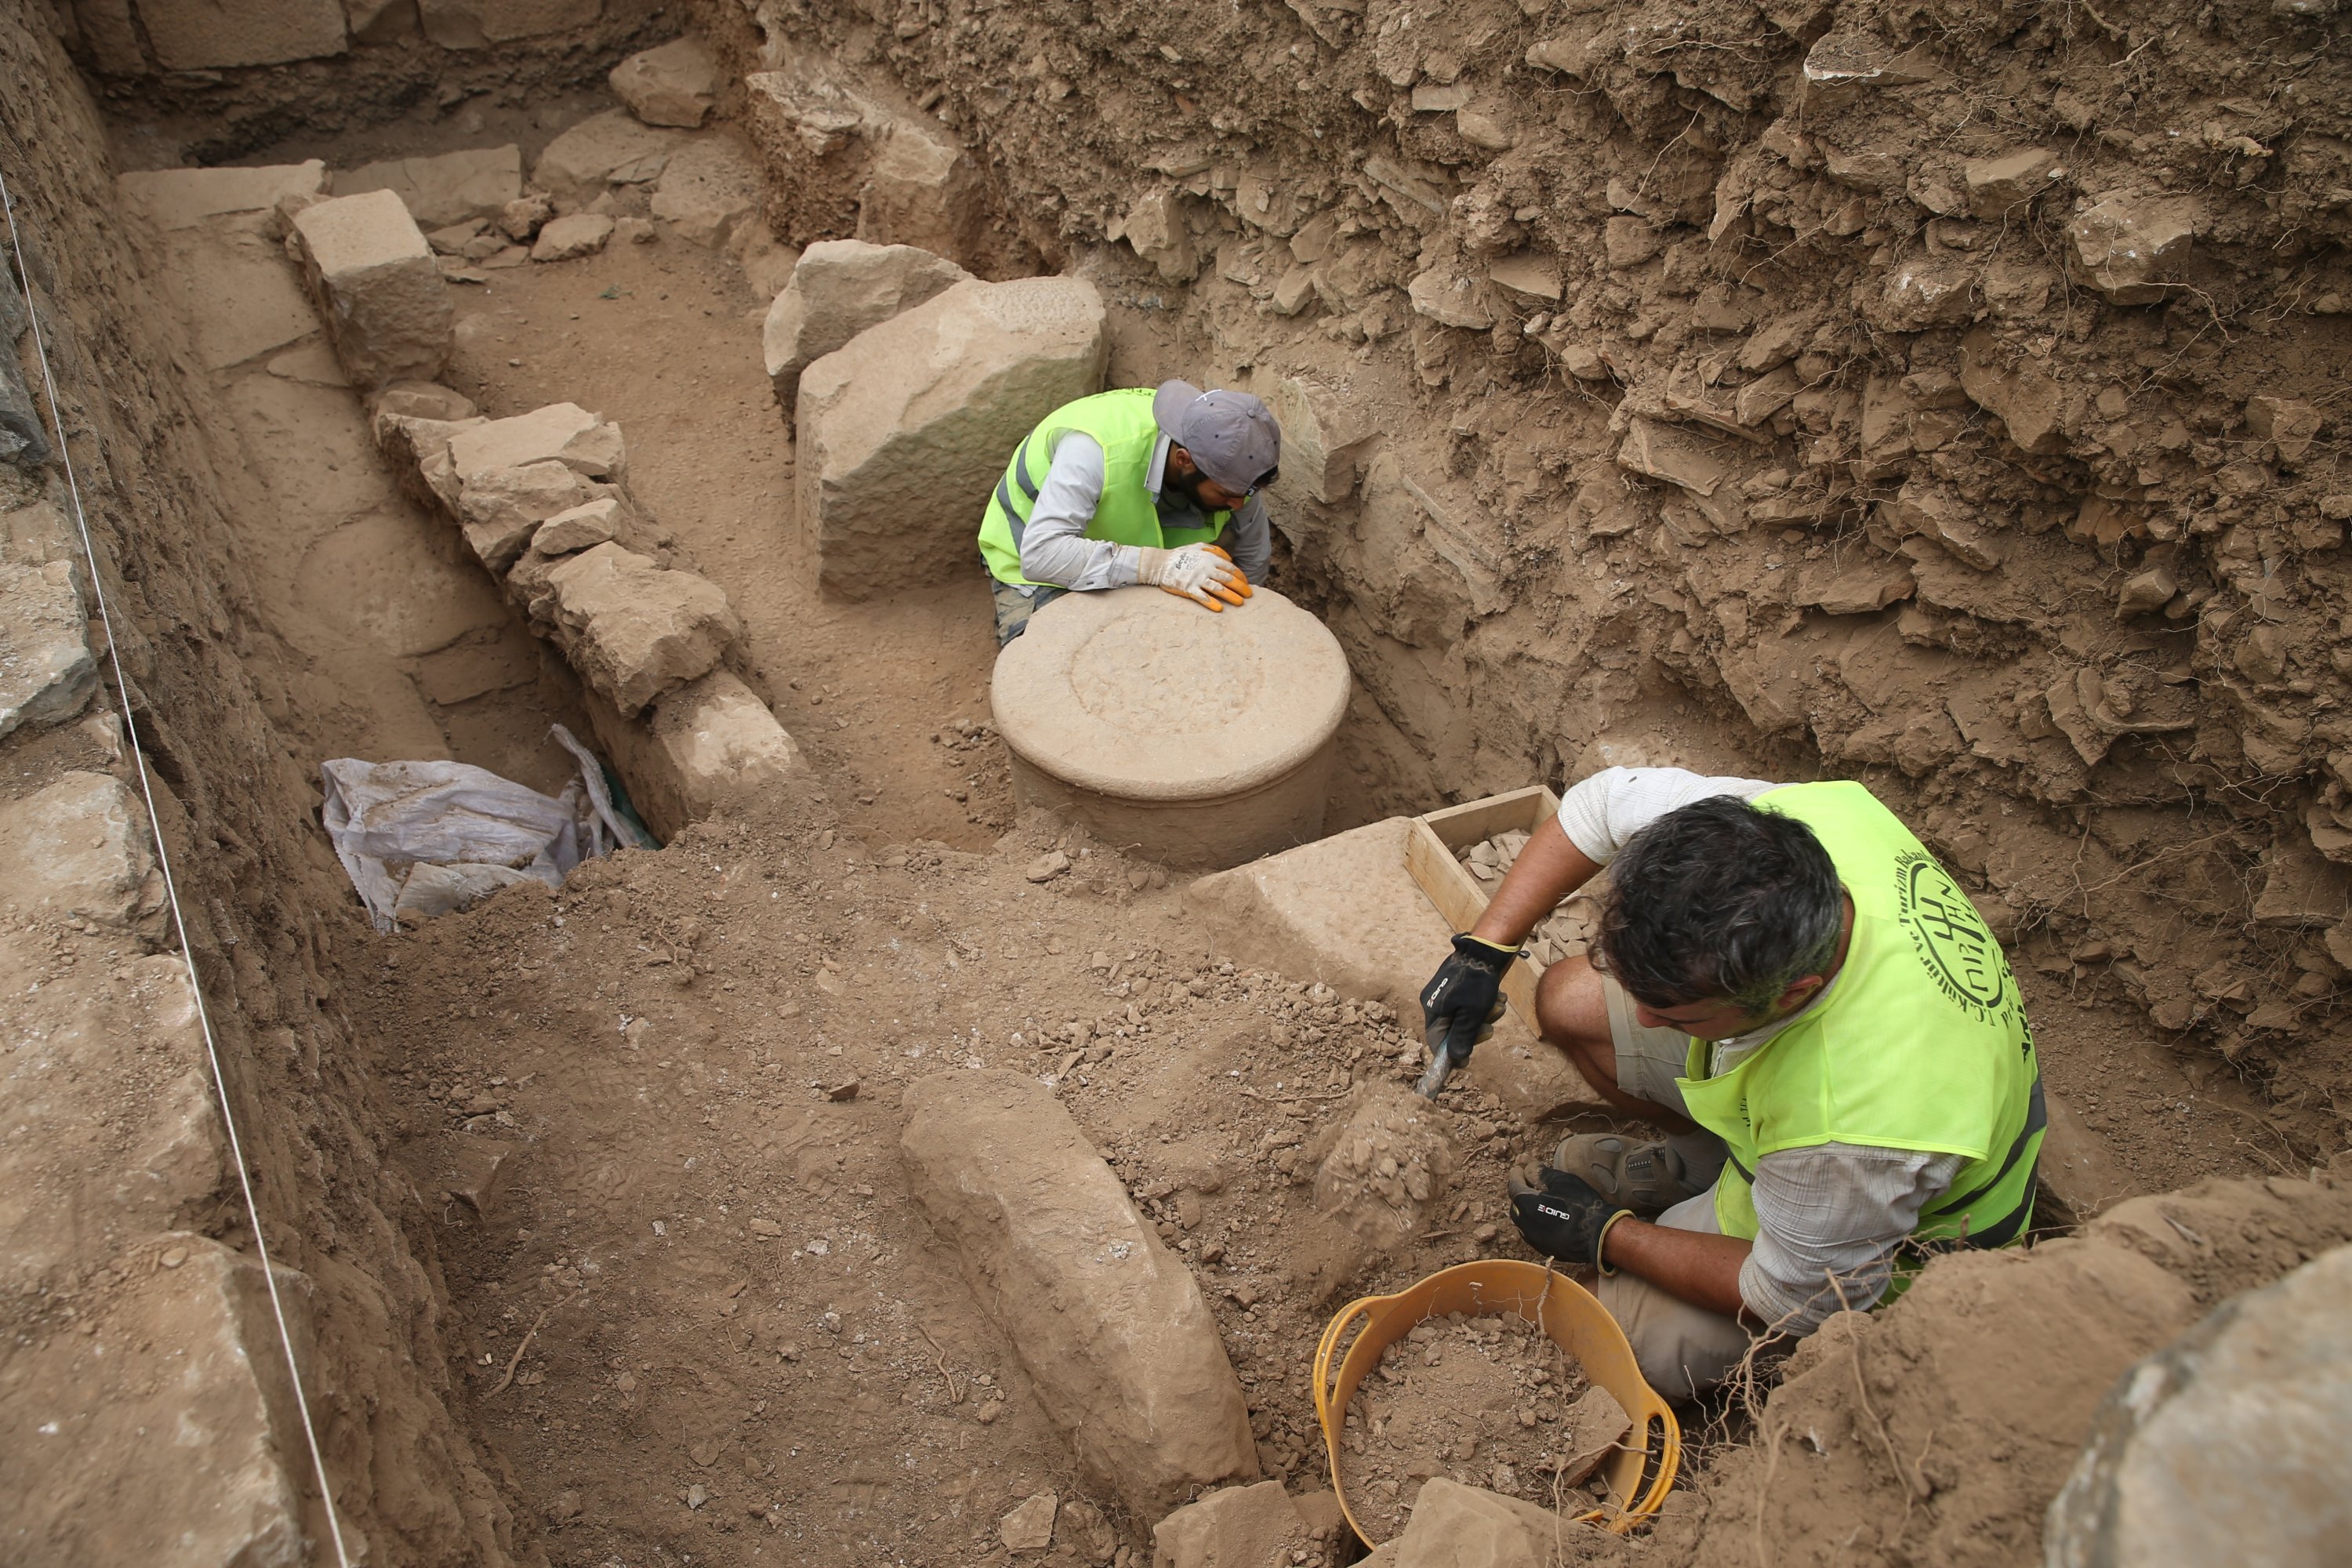 Αρχαιολόγοι και προσωπικό εργάζονται στον χώρο ανασκαφής στην αρχαία πόλη Πριέν στην επαρχία Aydın της Τουρκίας, στις 18 Οκτωβρίου 2021. (Φωτογραφία ΑΑ)